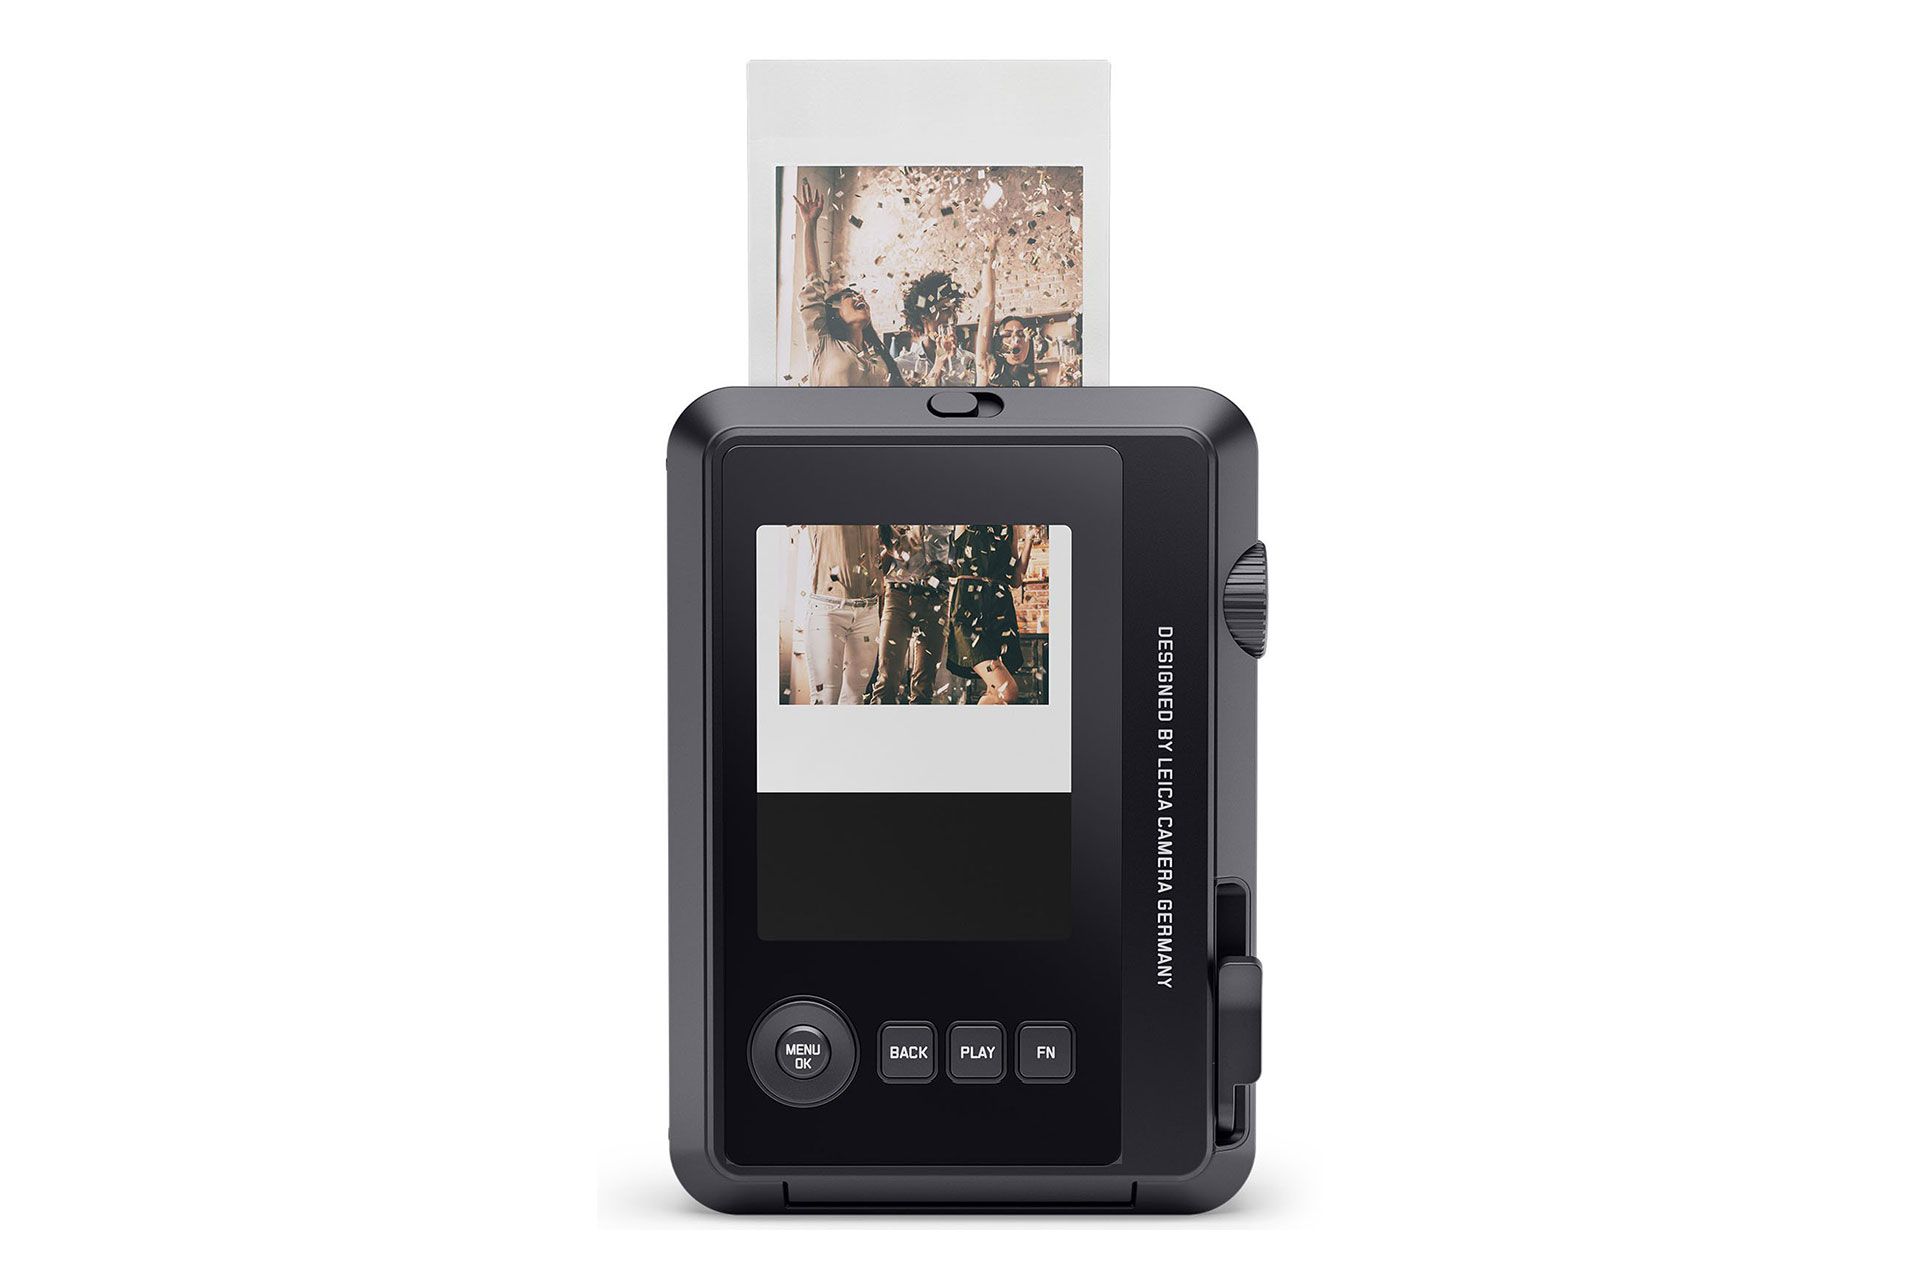 نمای پشتی دوربین چاپ فوری لایکا سوفورت ۲ در حال چاپ عکس رنگ مشکی